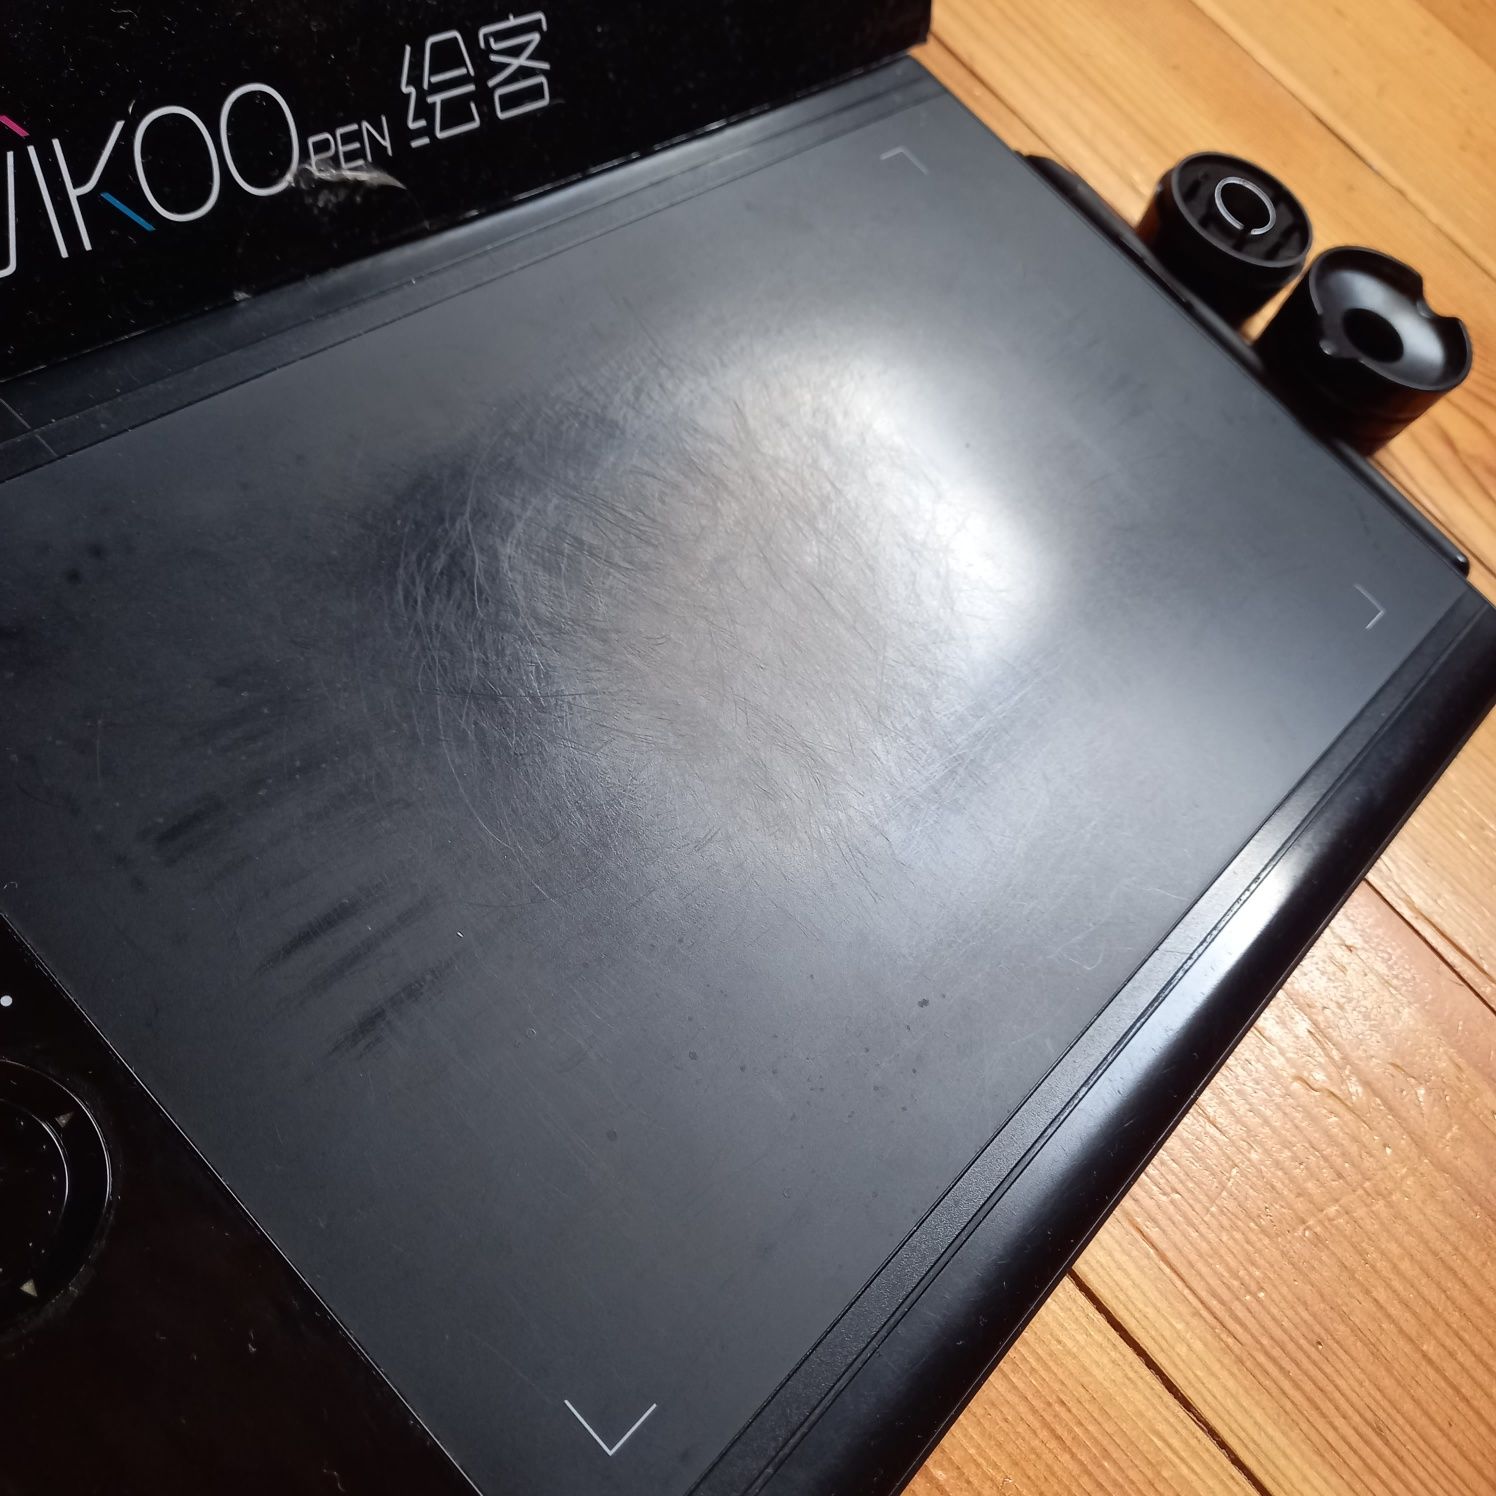 Графічний планшет планшетка для малювання Vikoo pen HK 908